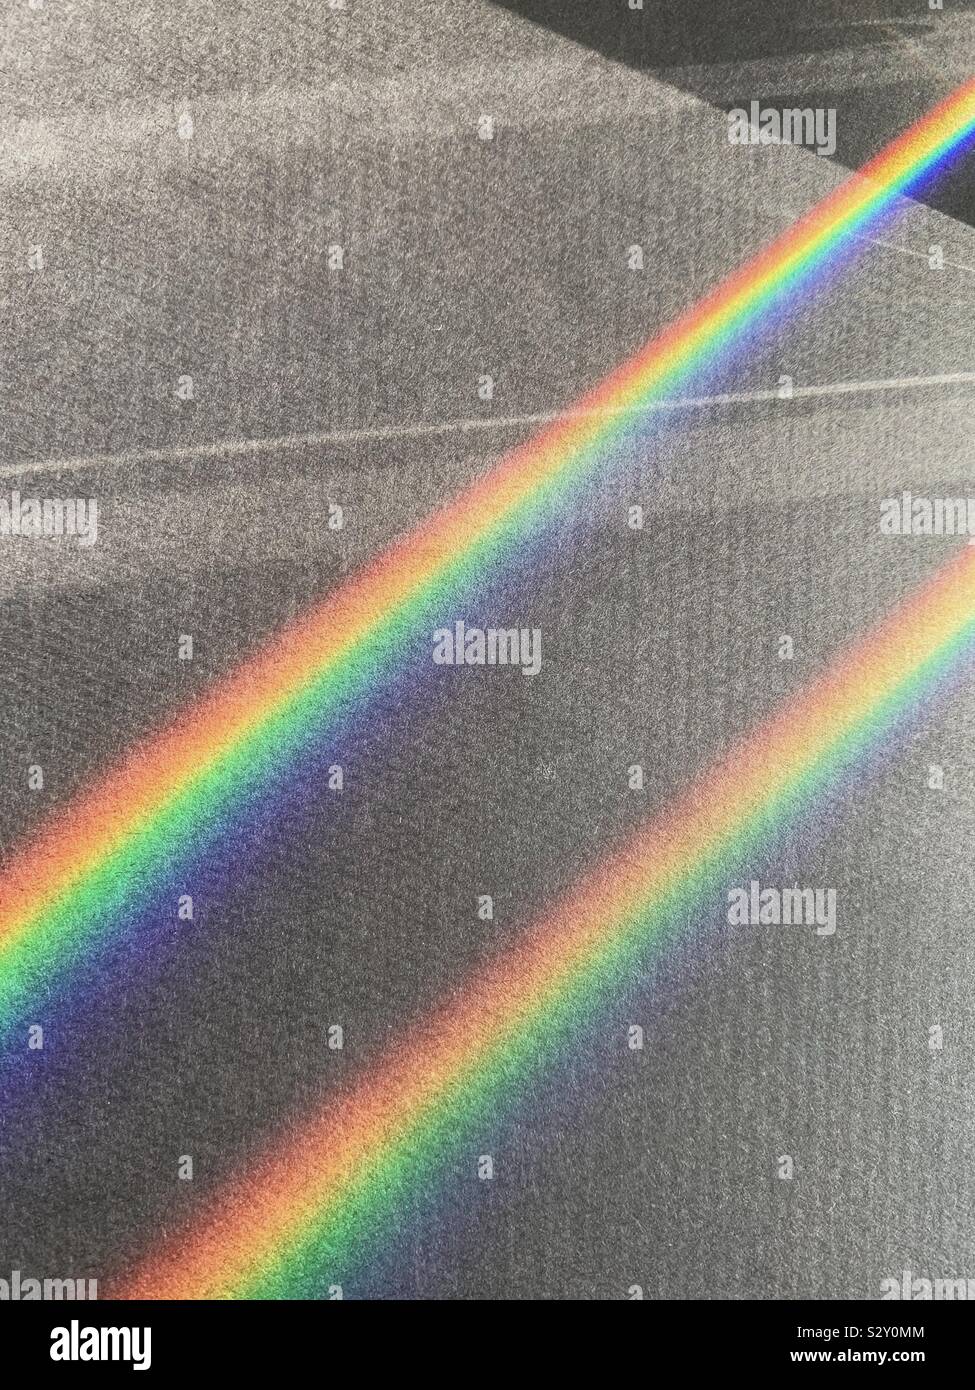 Doppel-, Regenbogen - farbige Lichtstrahlen. Natürliche Lichtbrechung. Stockfoto